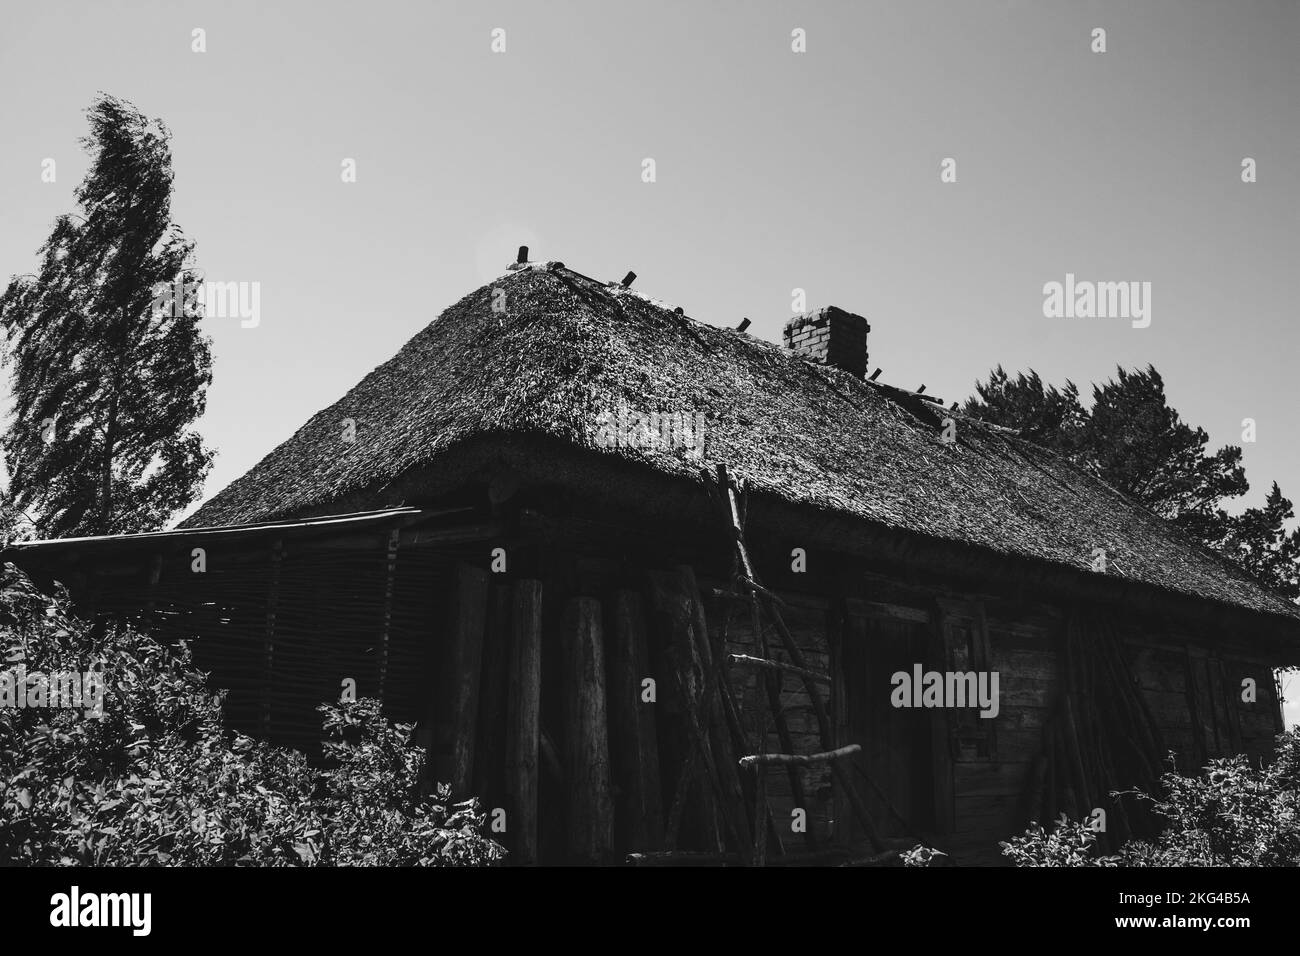 ancienne grange en bois avec un toit de chaume dans la forêt sous un ciel bleu. Banque D'Images